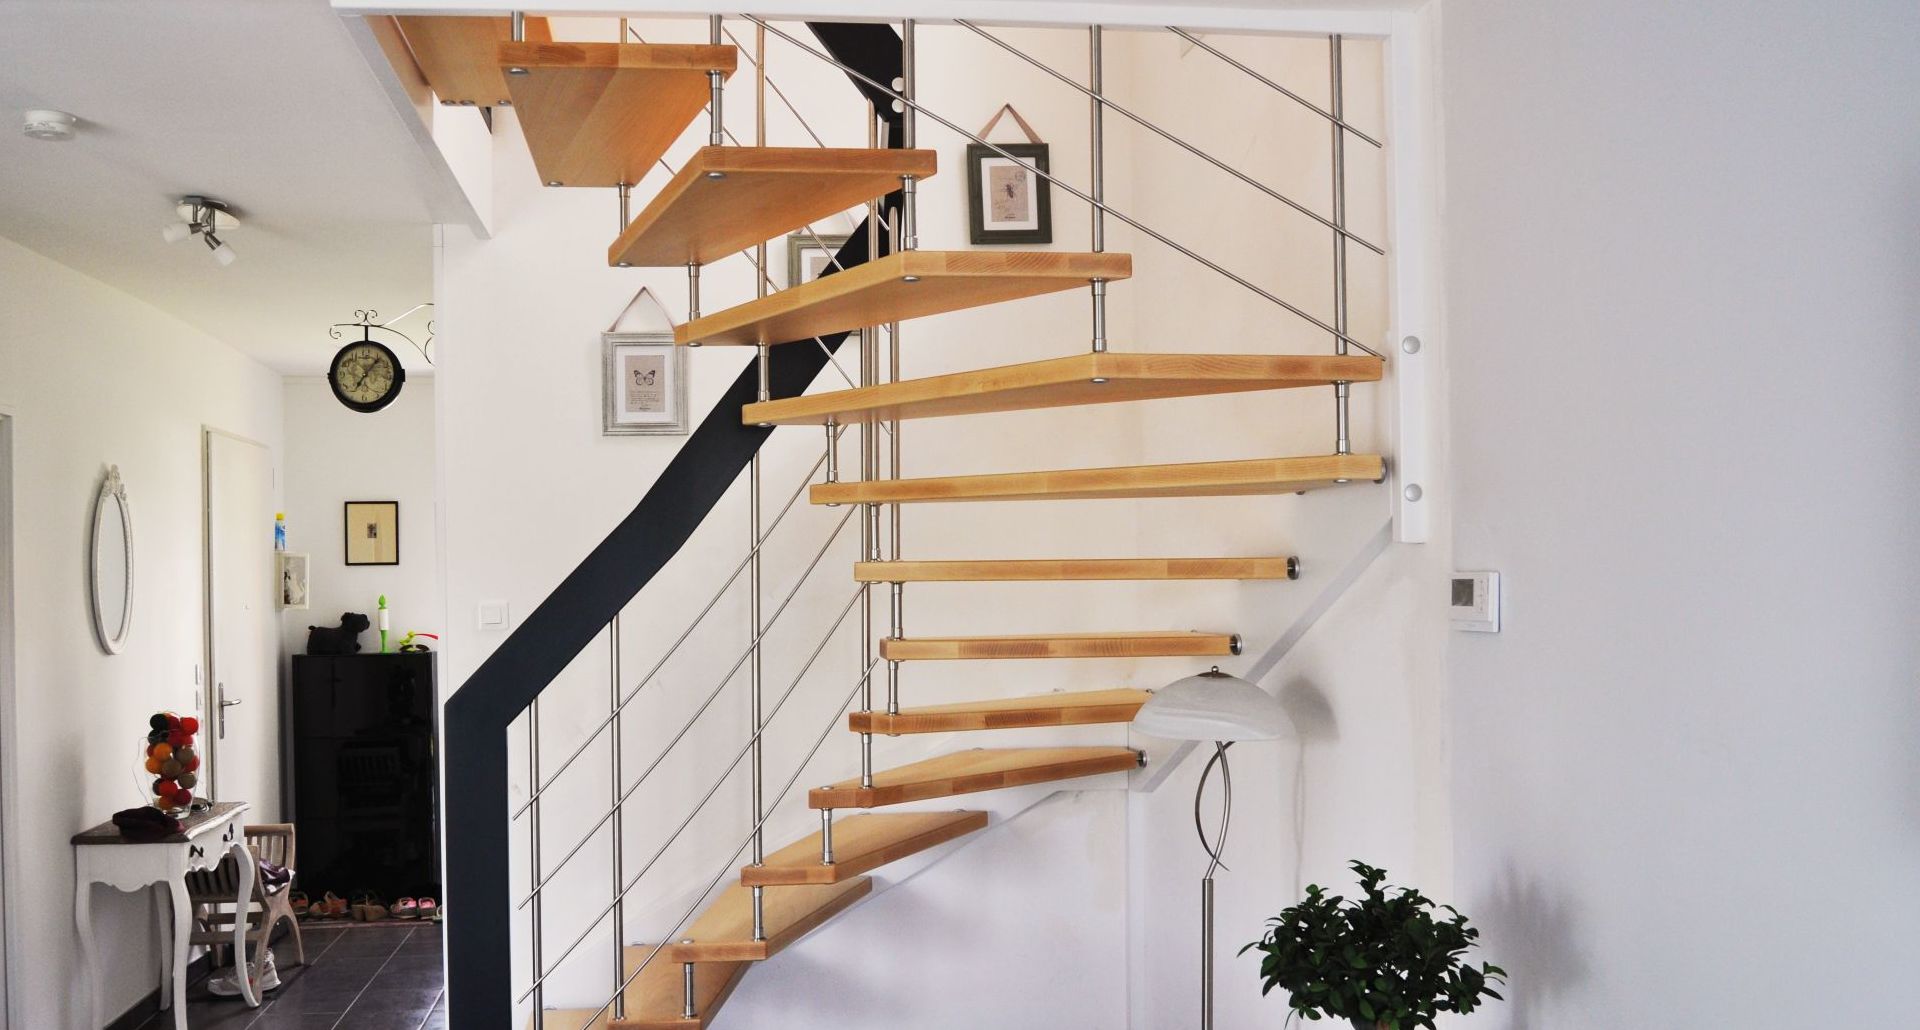 Peindre les marches pour transformer l'escalier: exemples.